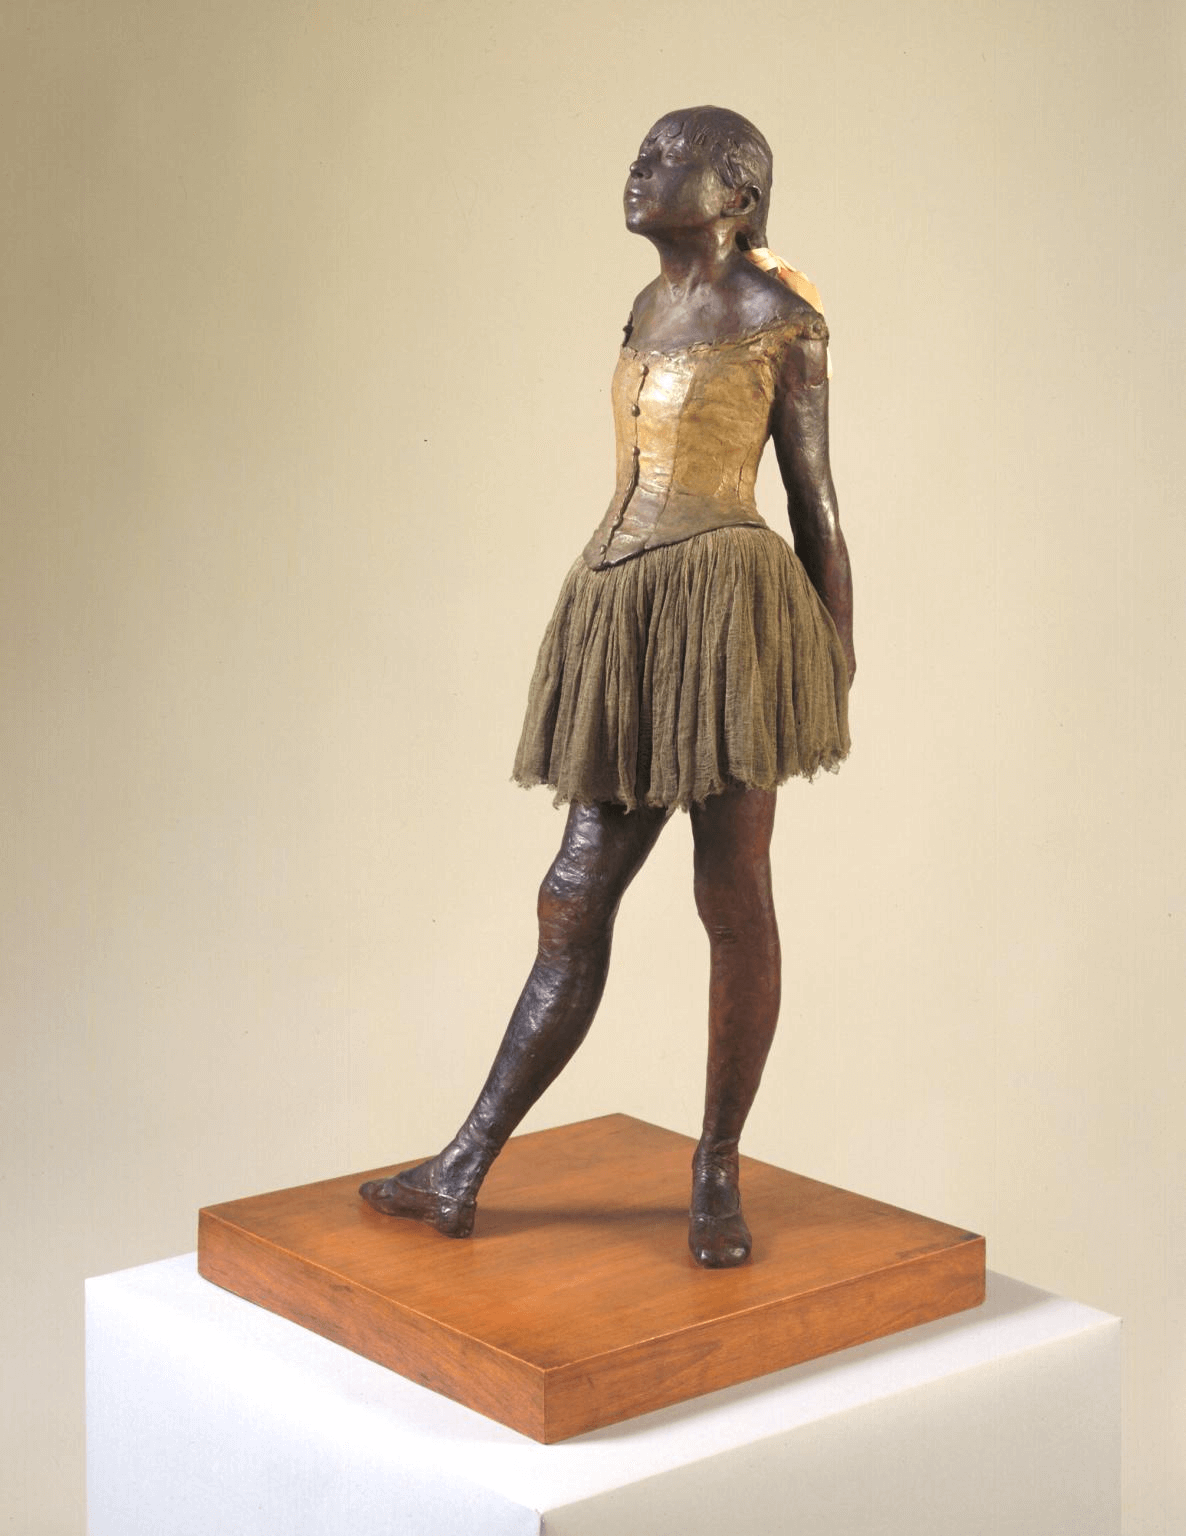 Petite danseuse de quatorze ans by Edgar Degas